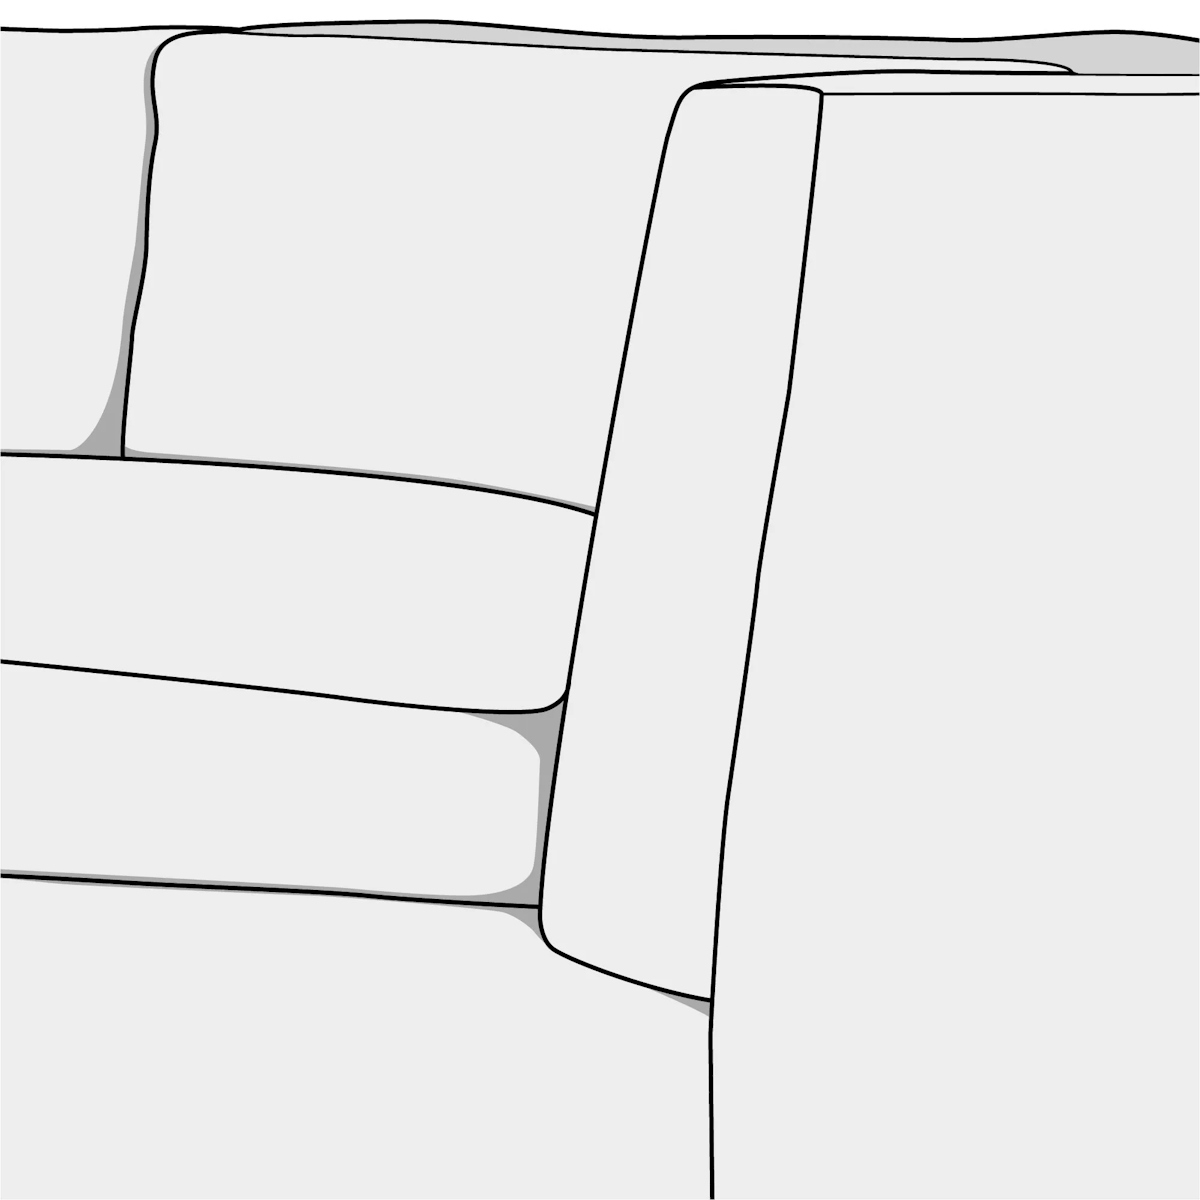 Illustration of shelter arm style sofa